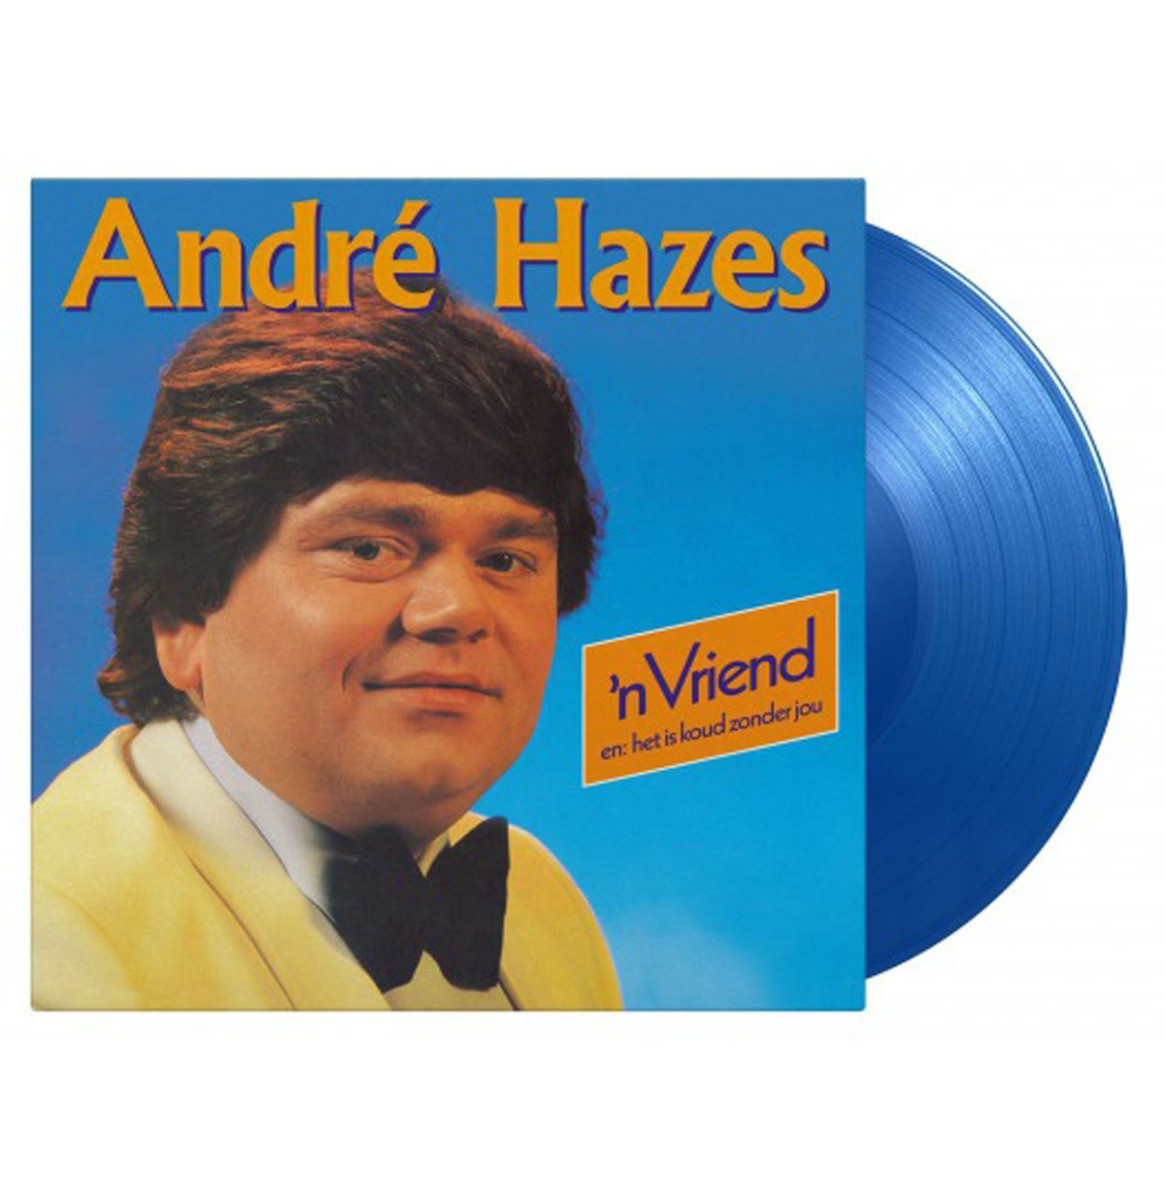 Andre Hazes - N Vriend (Gekleurd Vinyl) LP